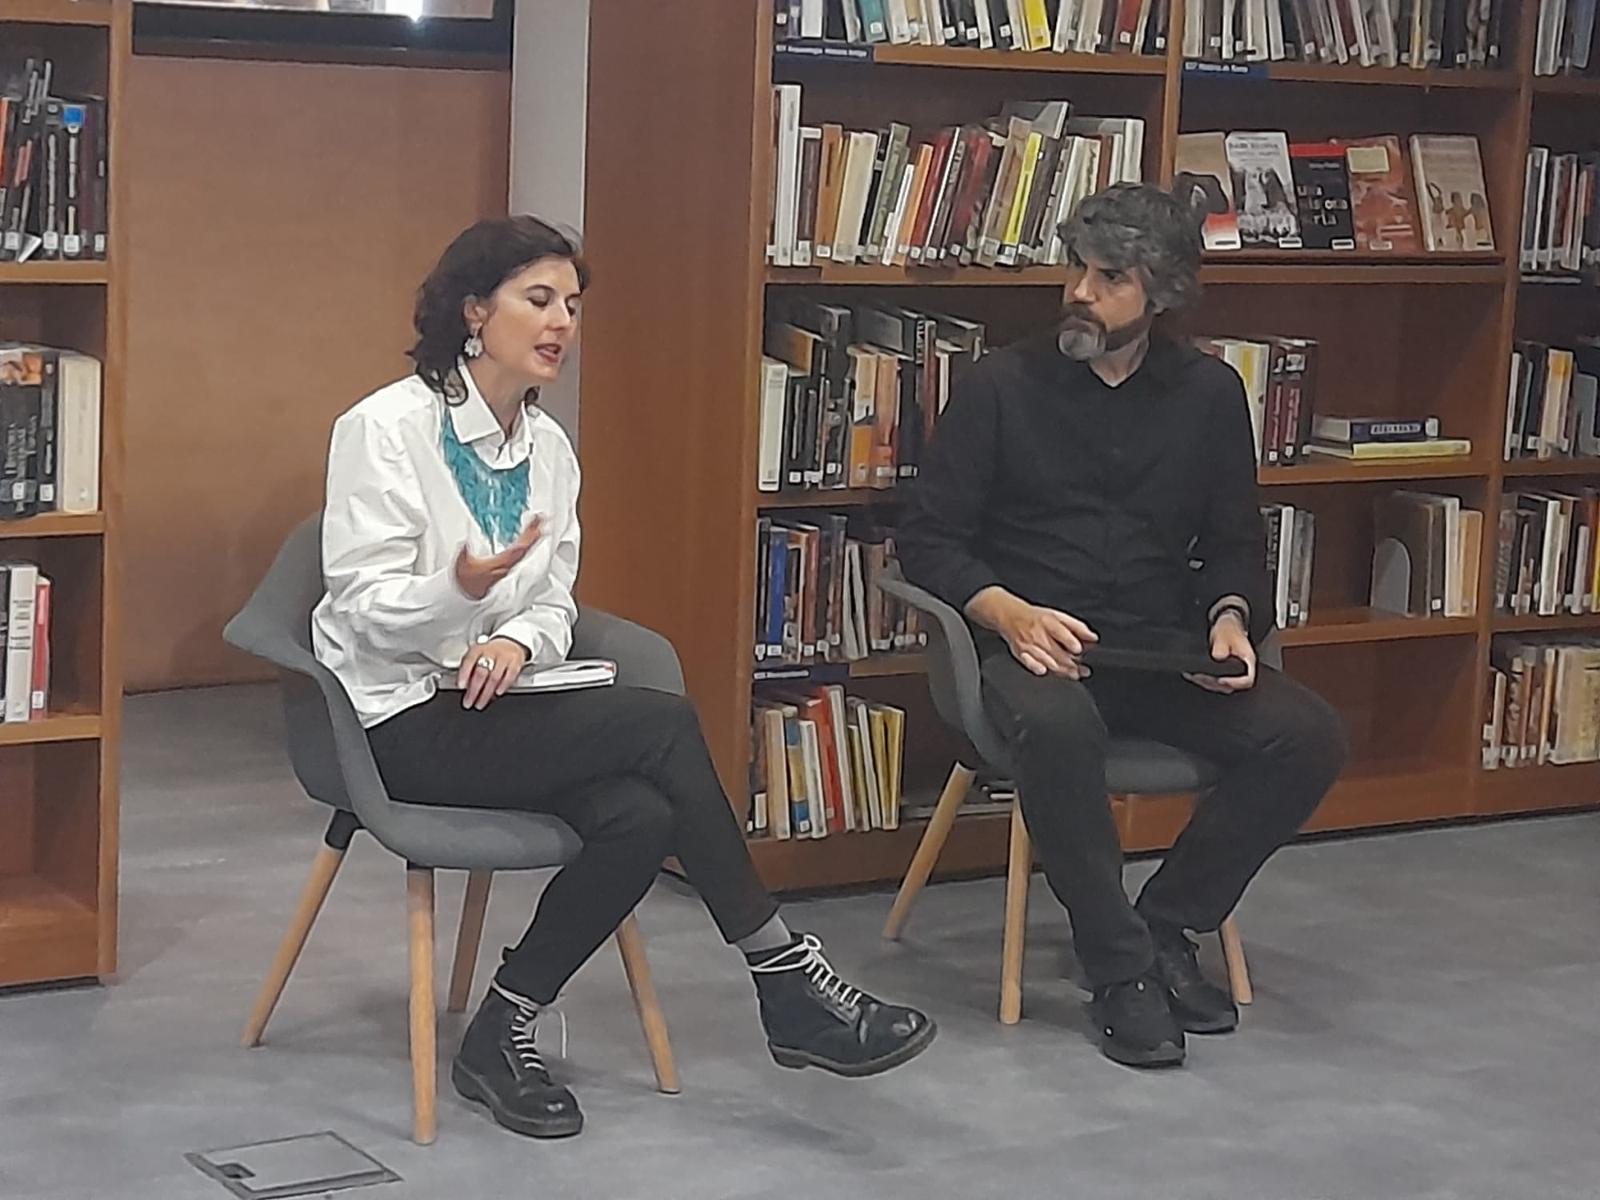 Carolina Martínez-López shares her writing process